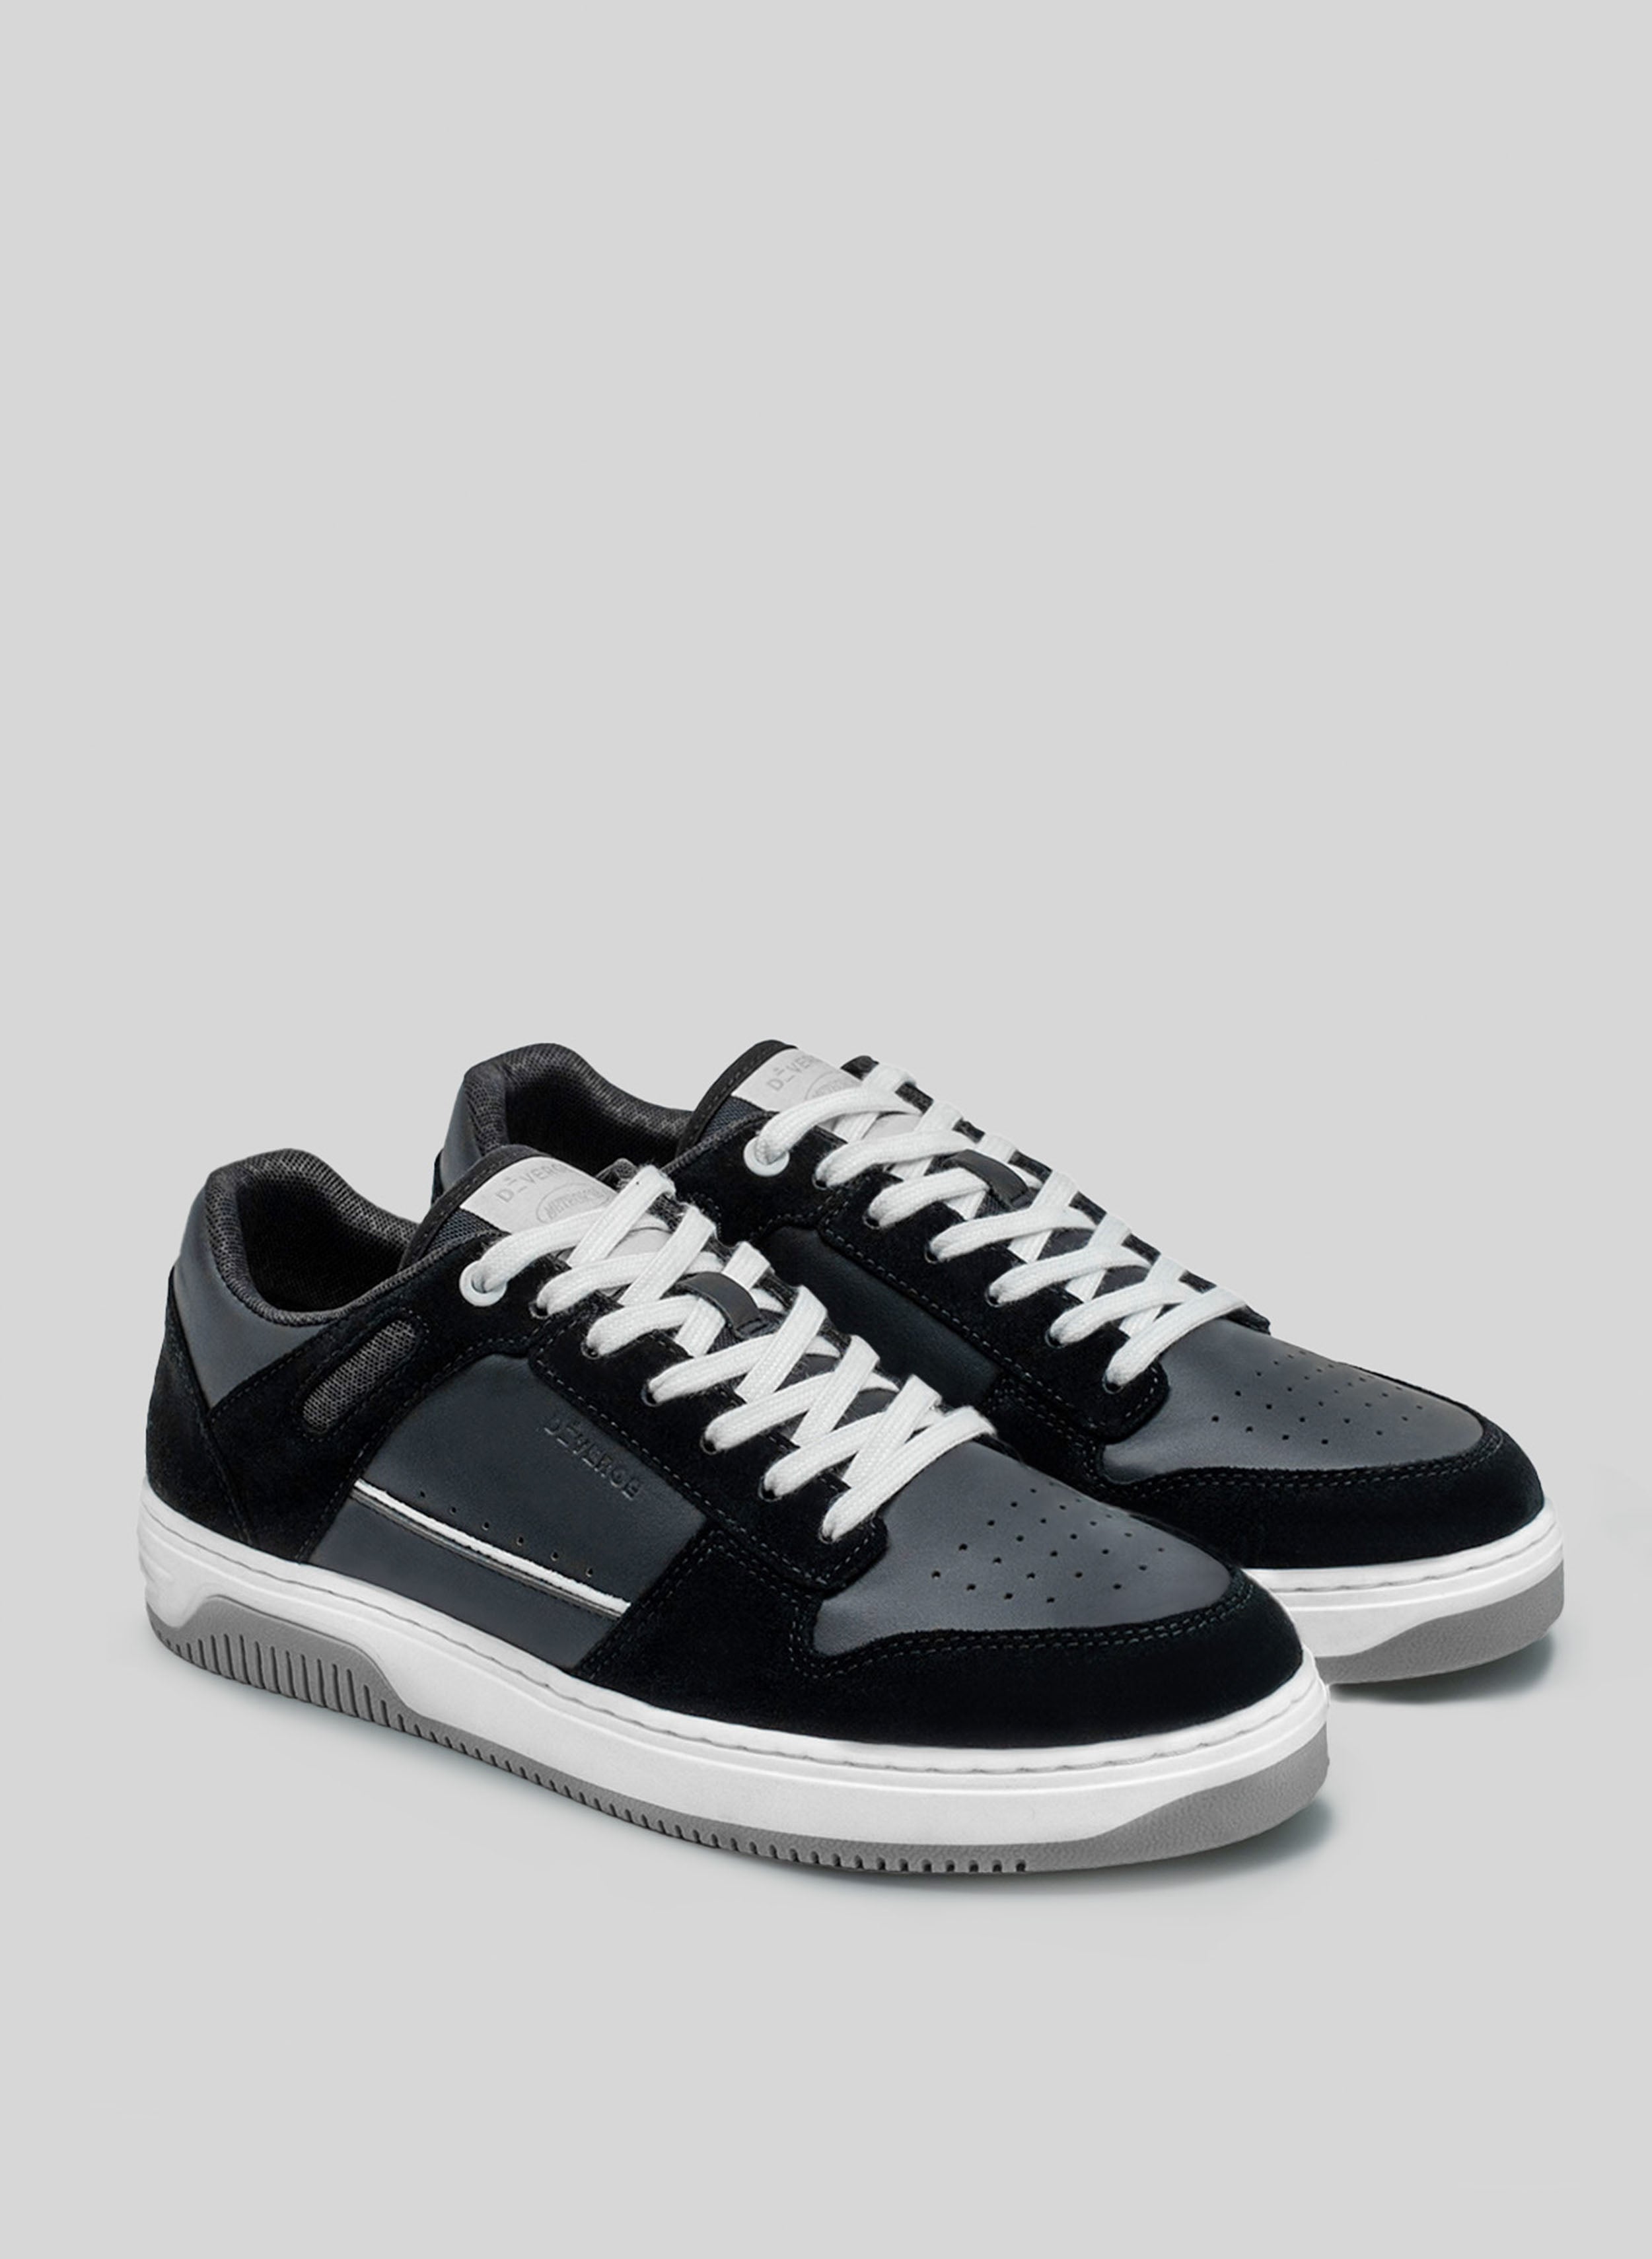 Schwarz-weiße sneakers mit grauer Sohle von Diverge, Förderung von sozialem Einfluss und maßgefertigten Schuhen durch das imagine Projekt. 